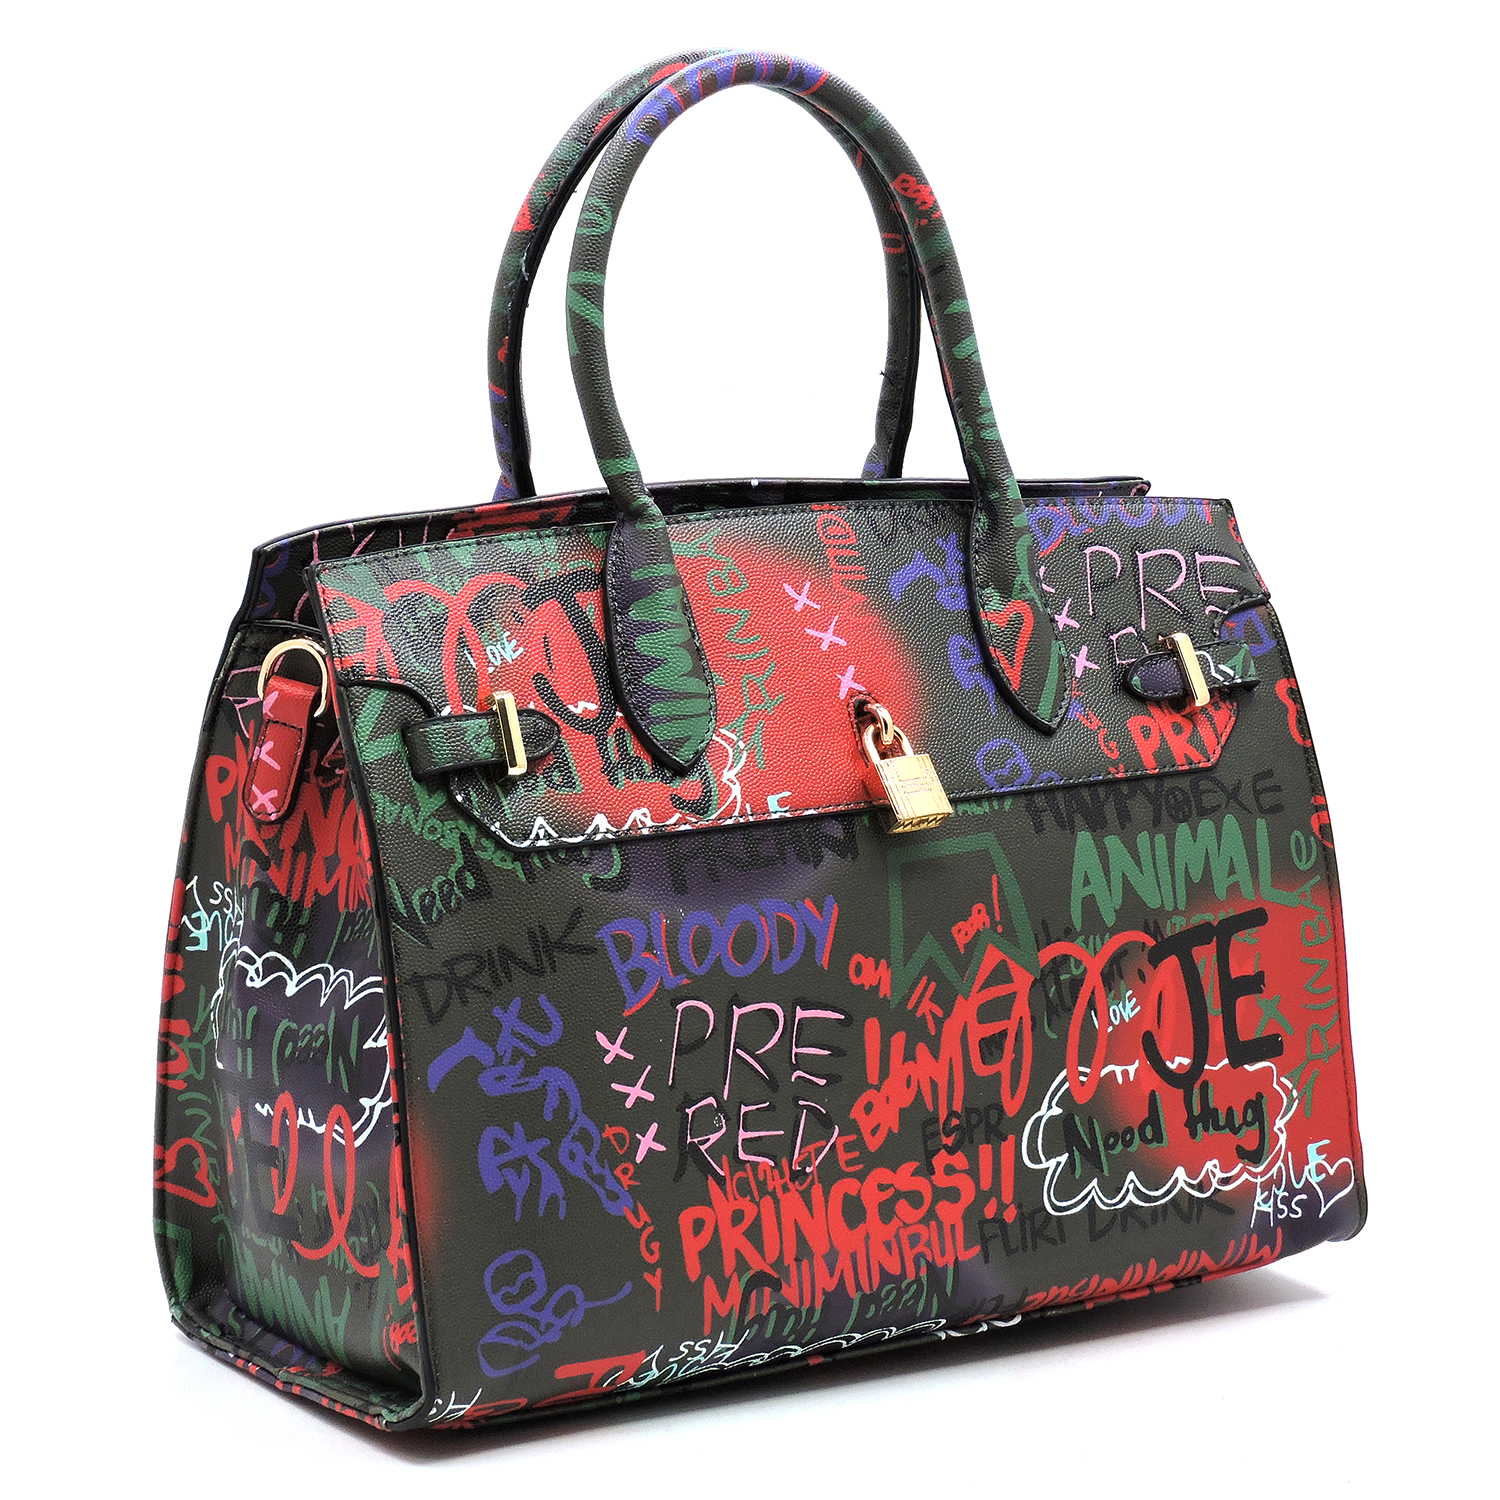 Graffiti Padlock Handbag- Black - Angies